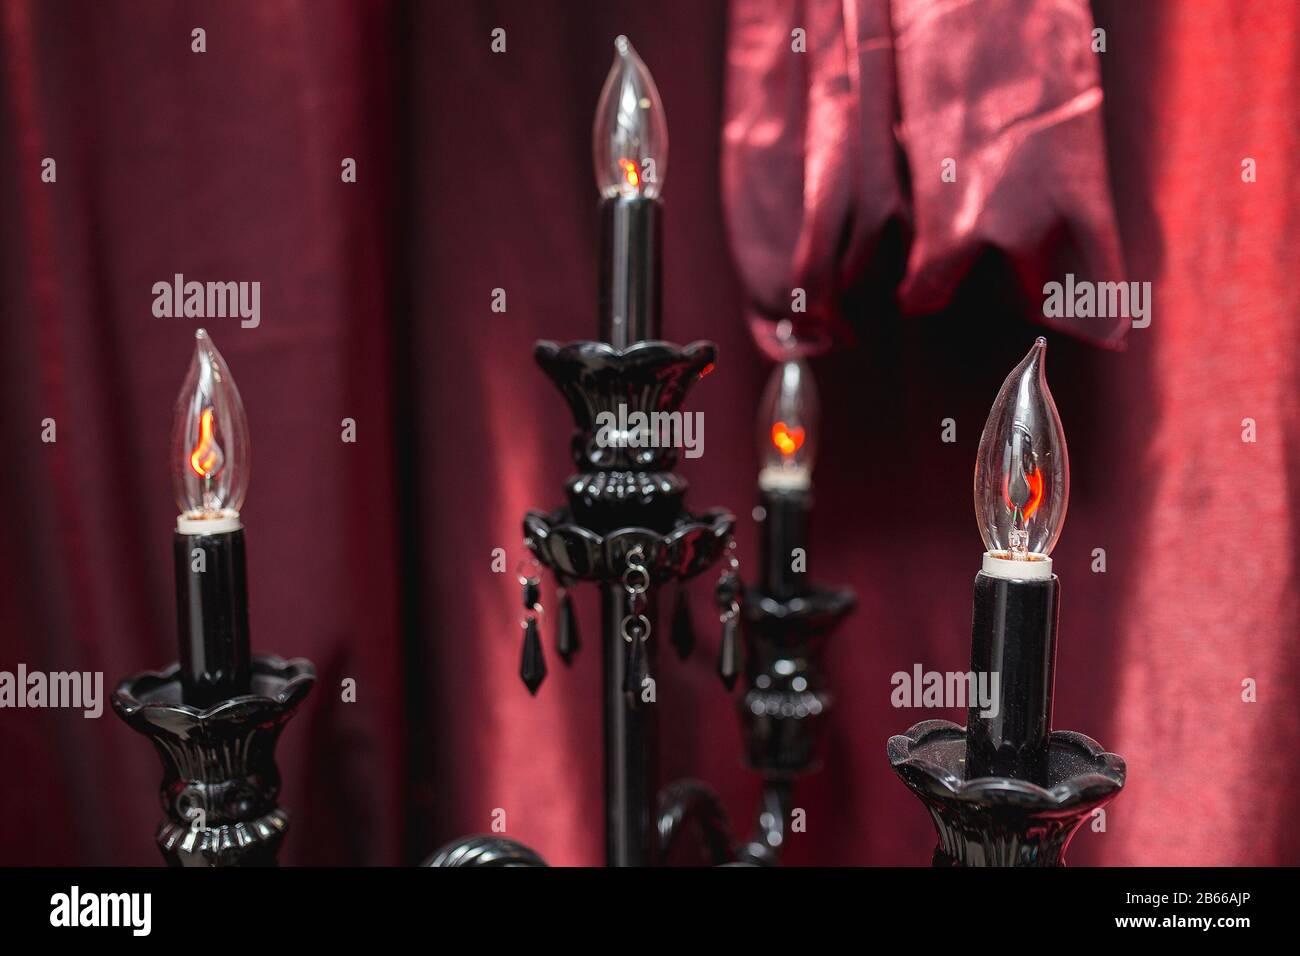 Lampe à black de style vintage avec chandeliers Banque D'Images